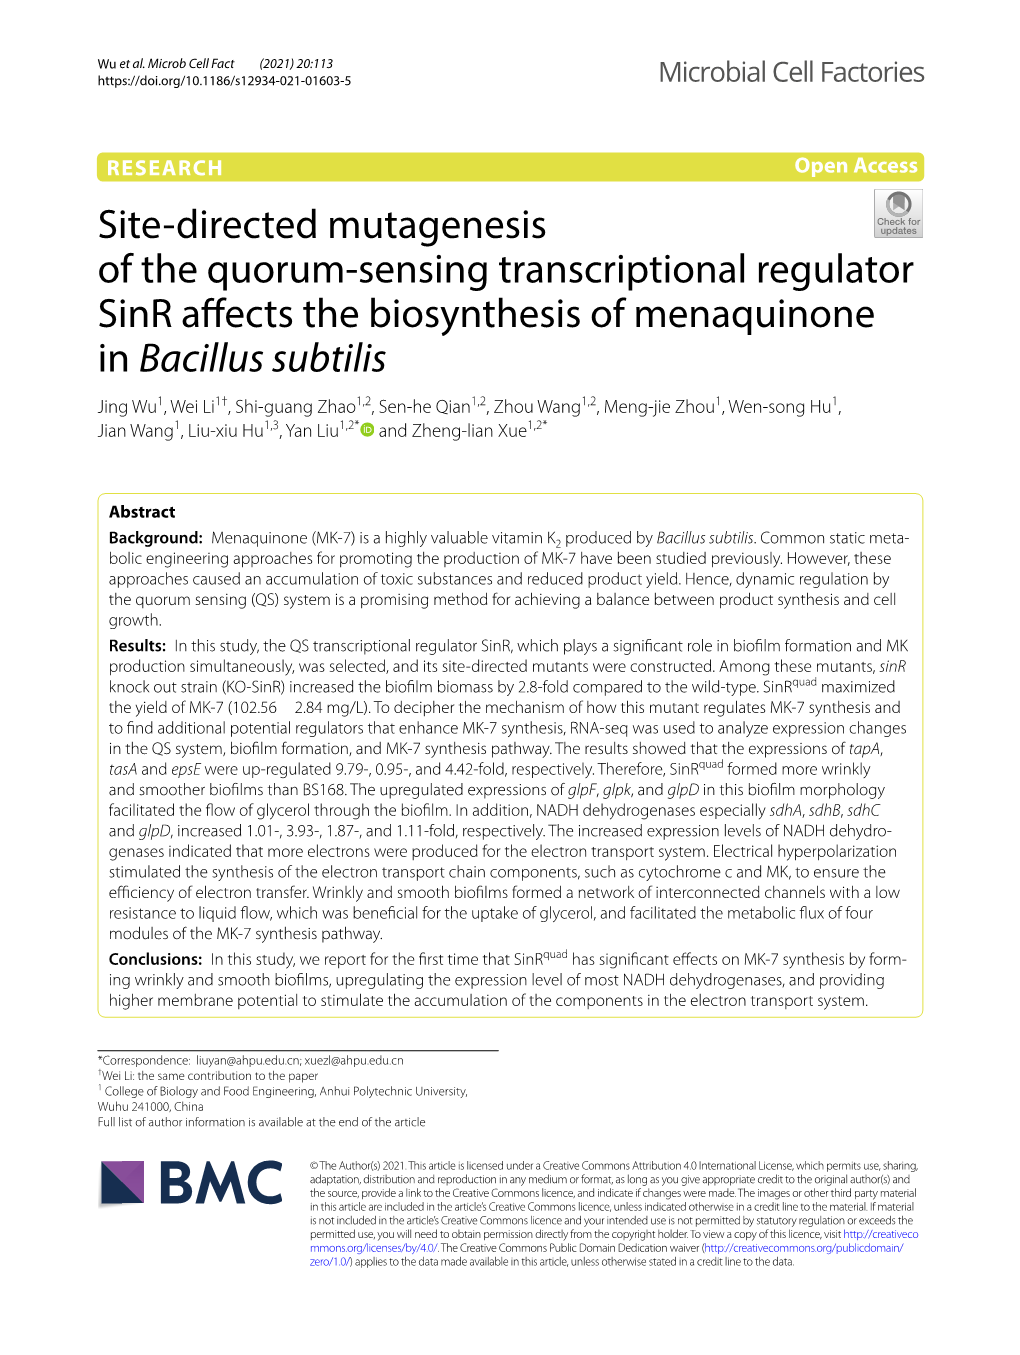 Site-Directed Mutagenesis of the Quorum-Sensing Transcriptional